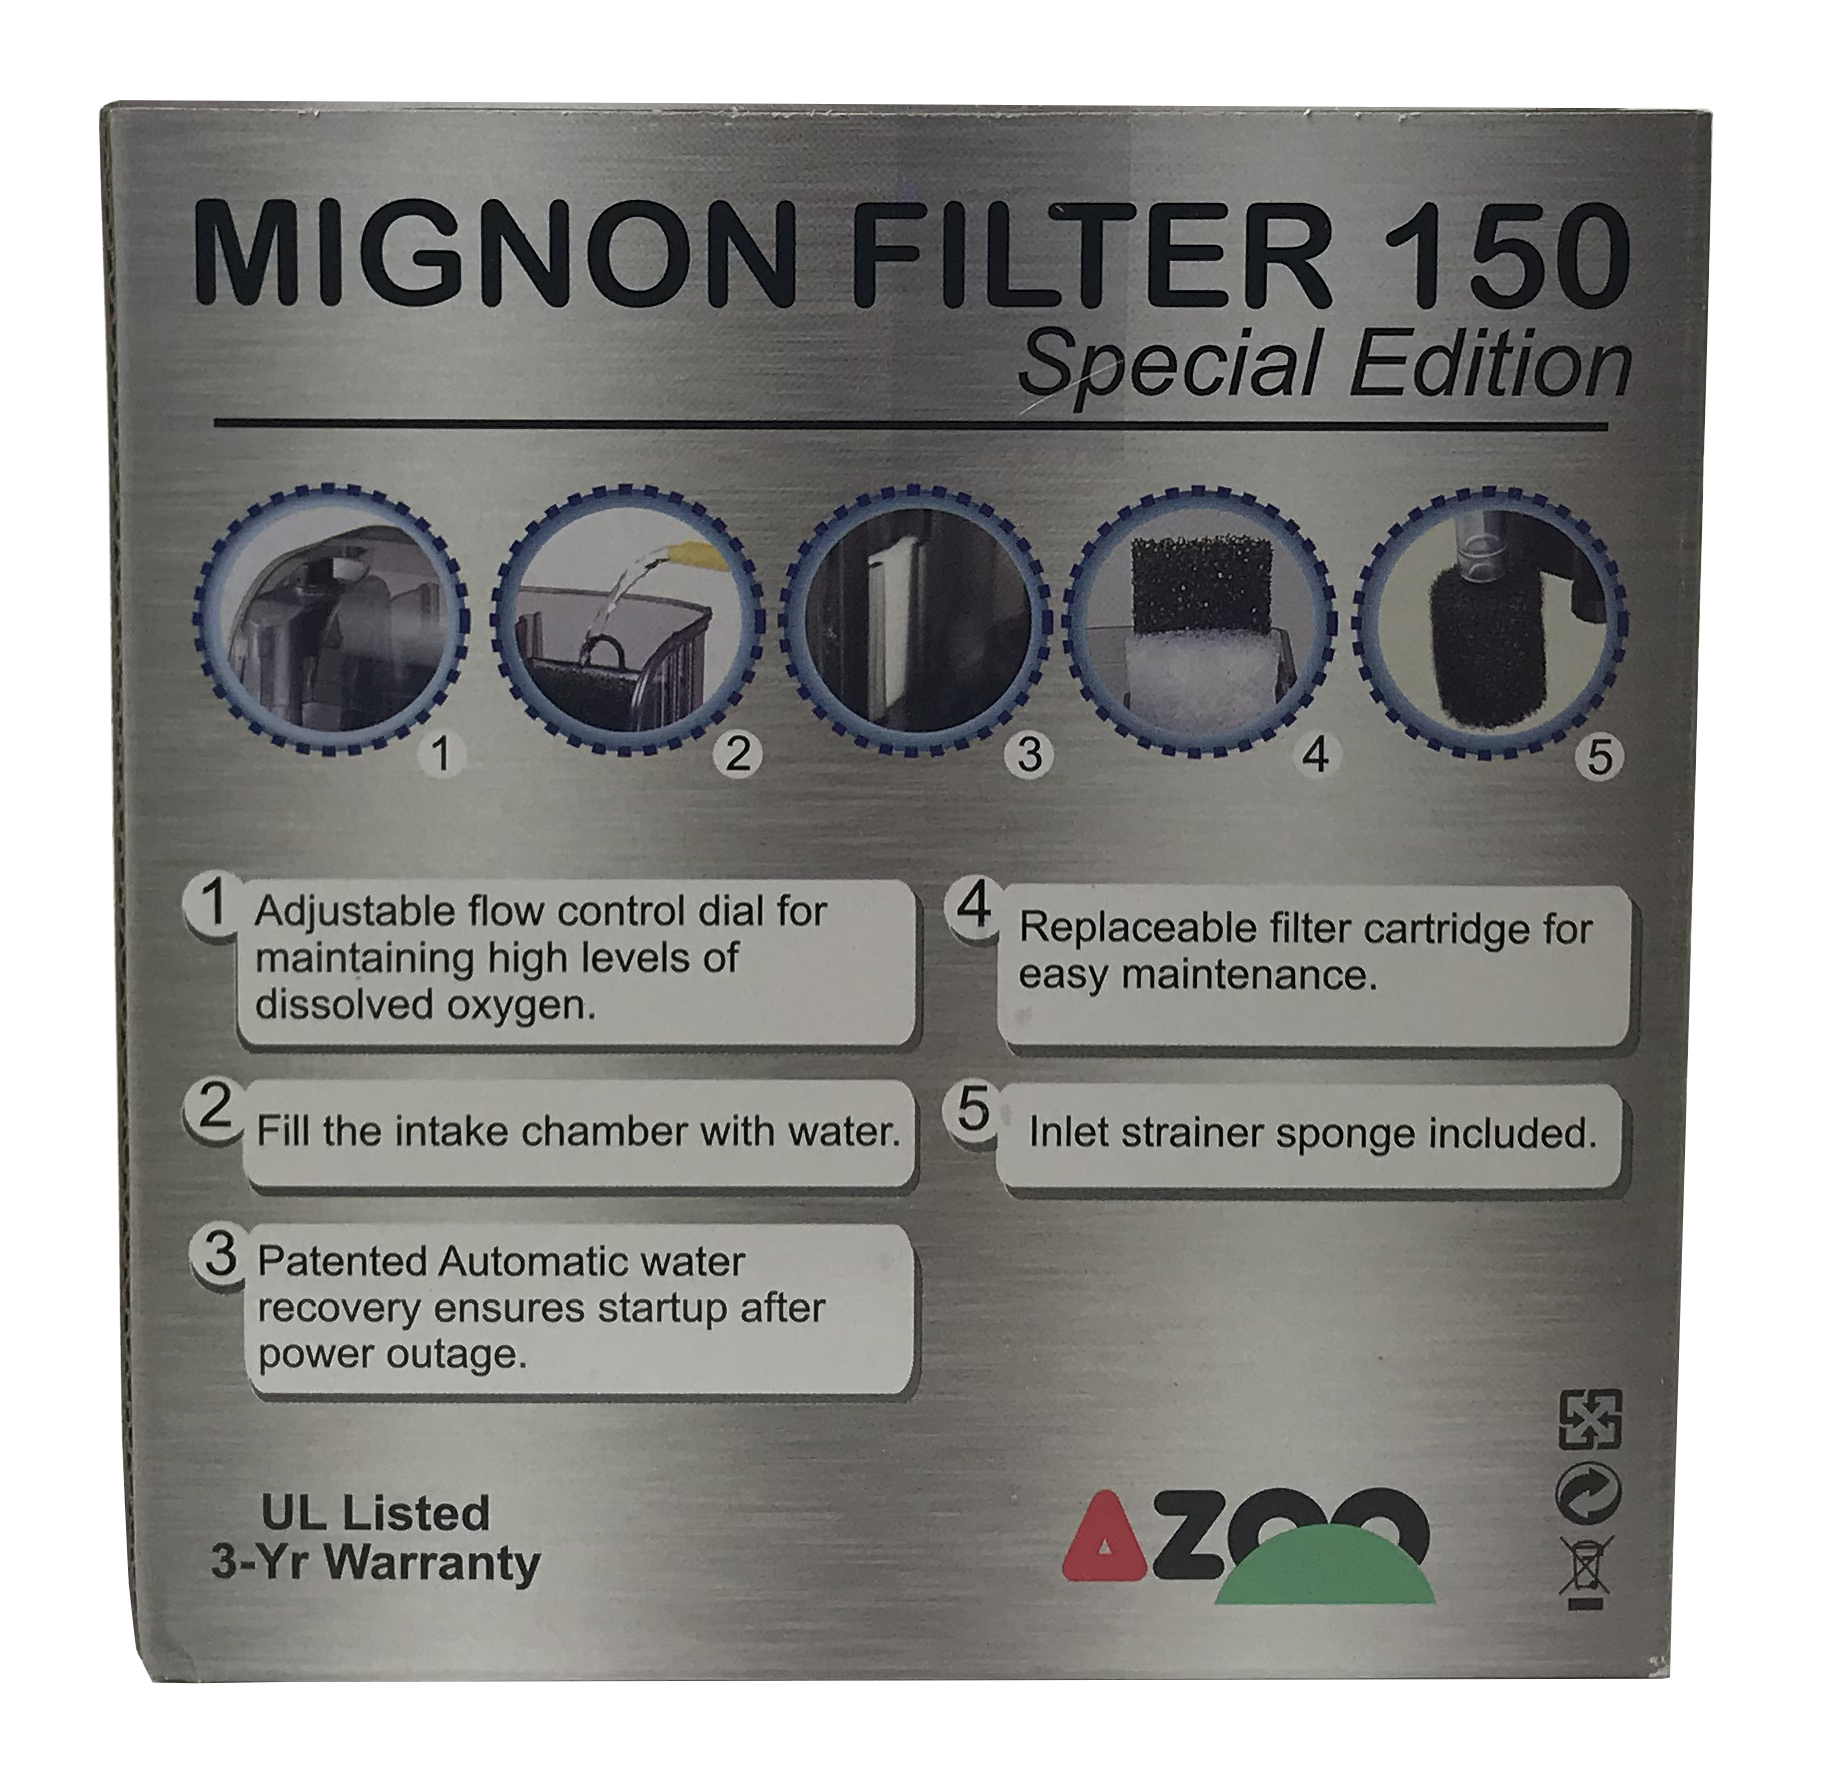 Mignon Filter 150 Special Edition - 40 GPH Azoo